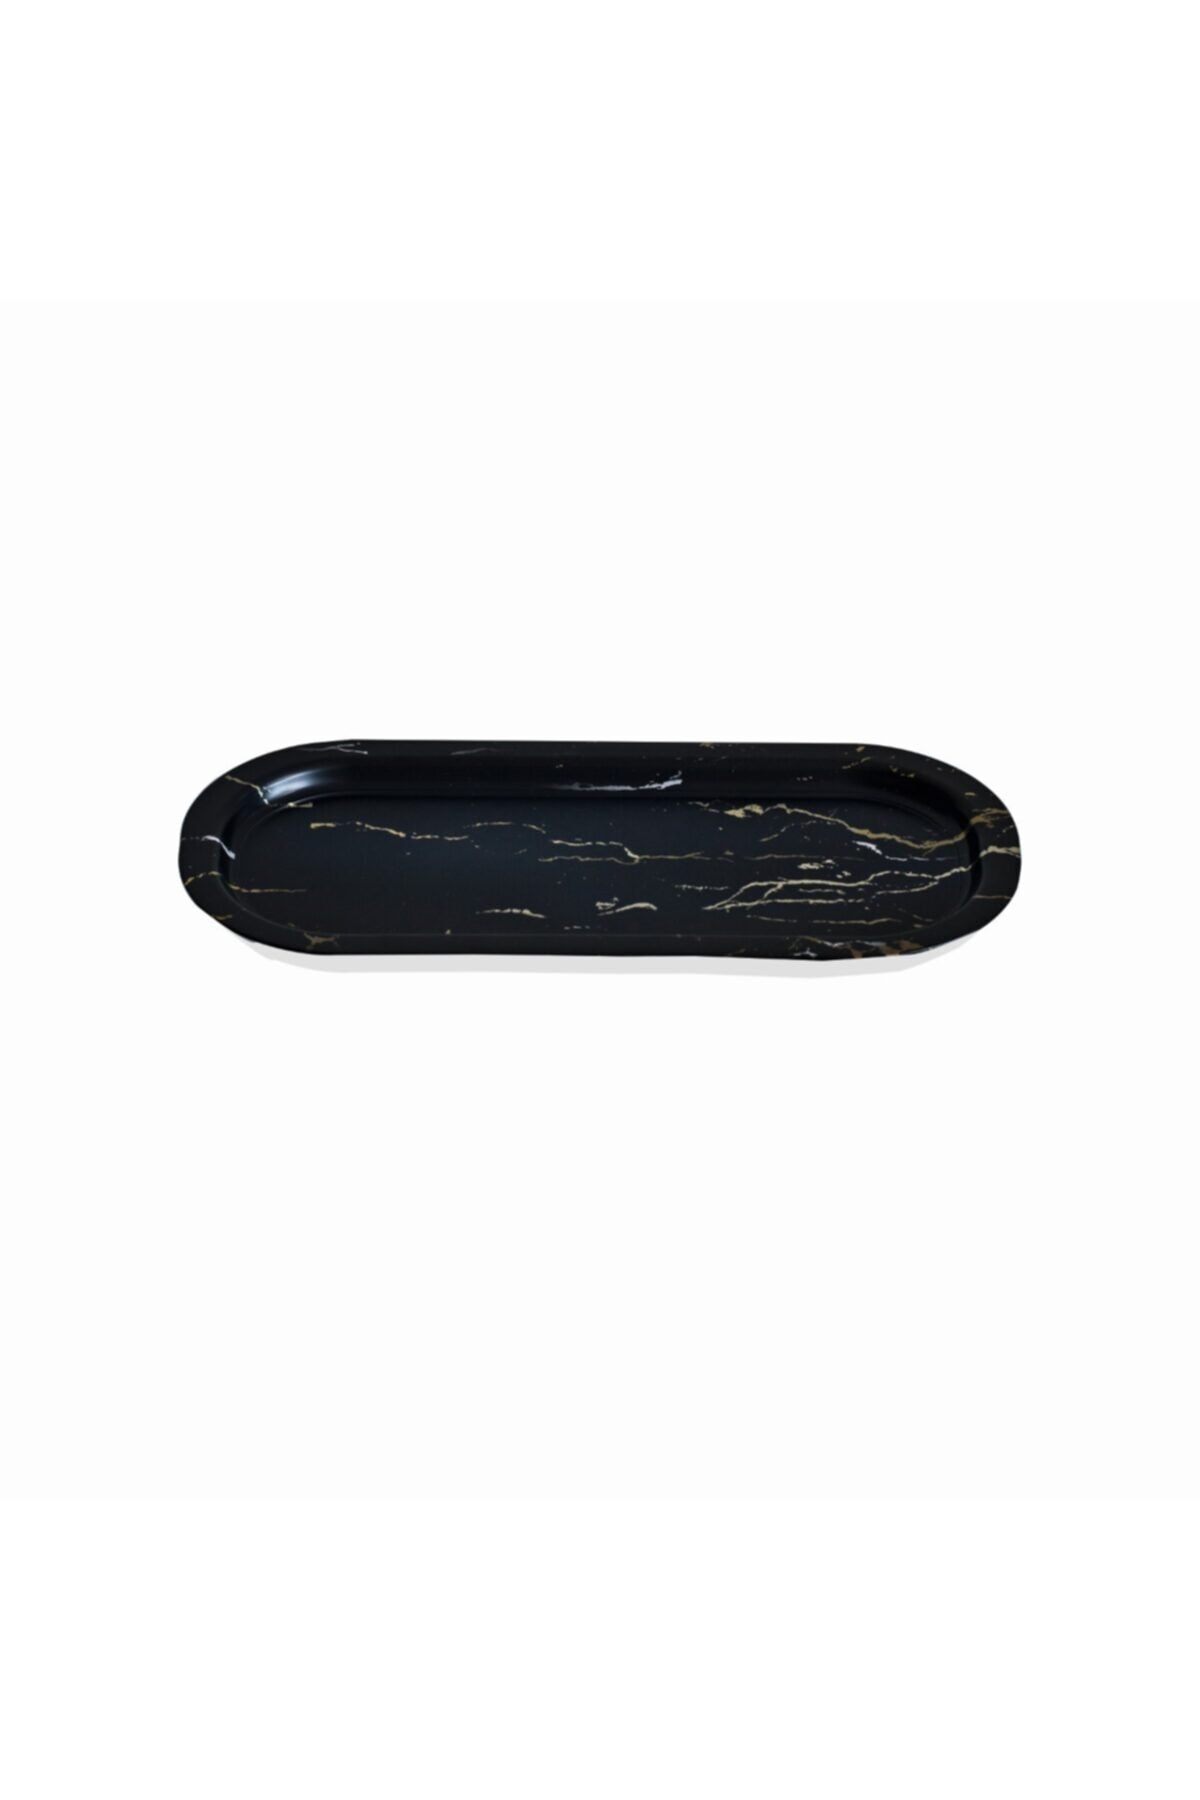 Evle Ef168-50 Marble Black Desenli Oval Tepsi 16x35 Cm